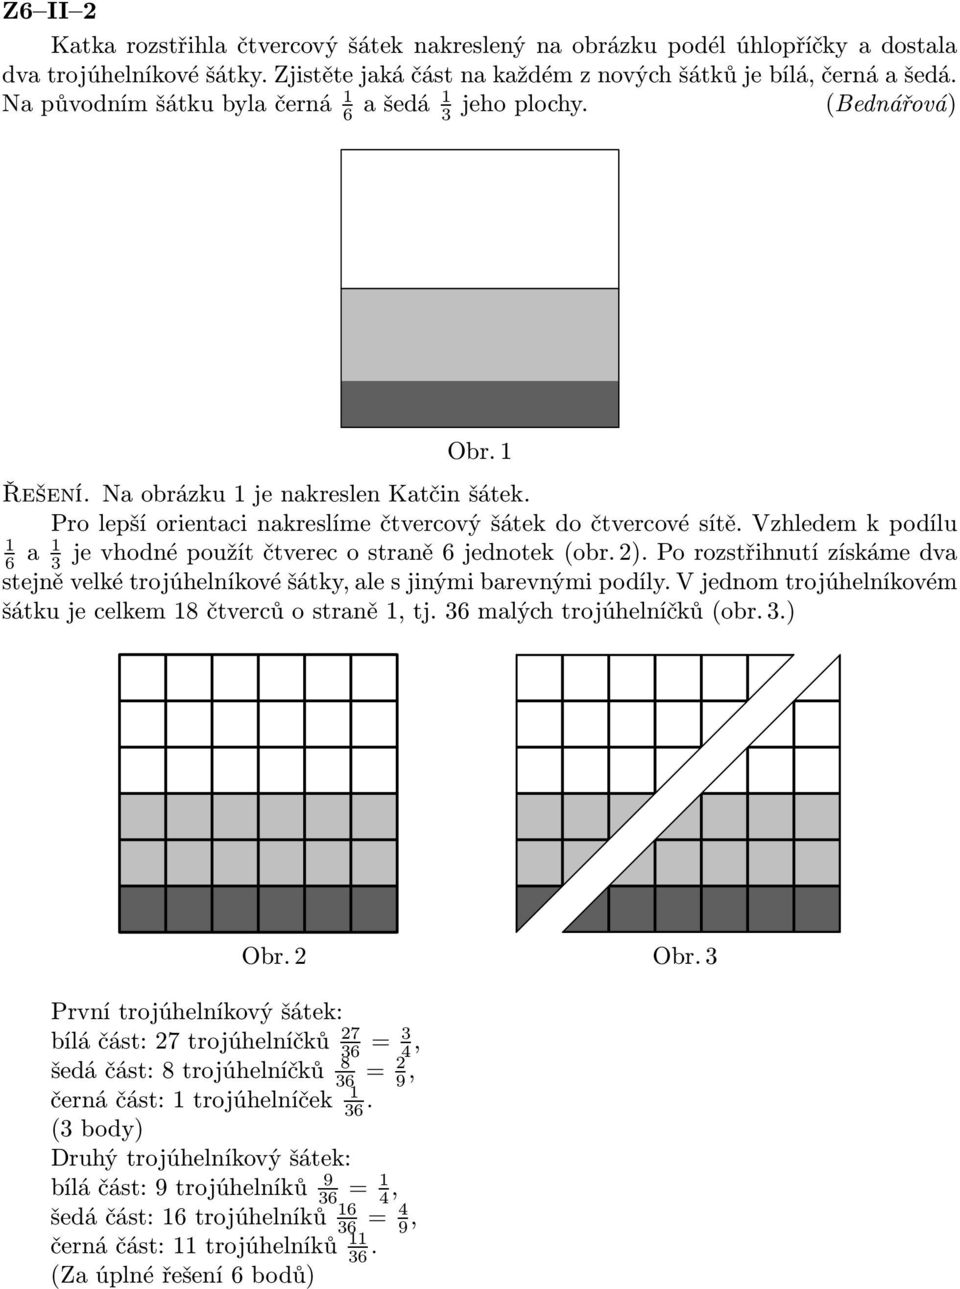 Vzhledem k podílu 1 6 a 1 je vhodné použít čtverec o straně 6 jednotek (obr. 2). Po rozstřihnutí získáme dva 3 stejně velké trojúhelníkové šátky, ale s jinými barevnými podíly.